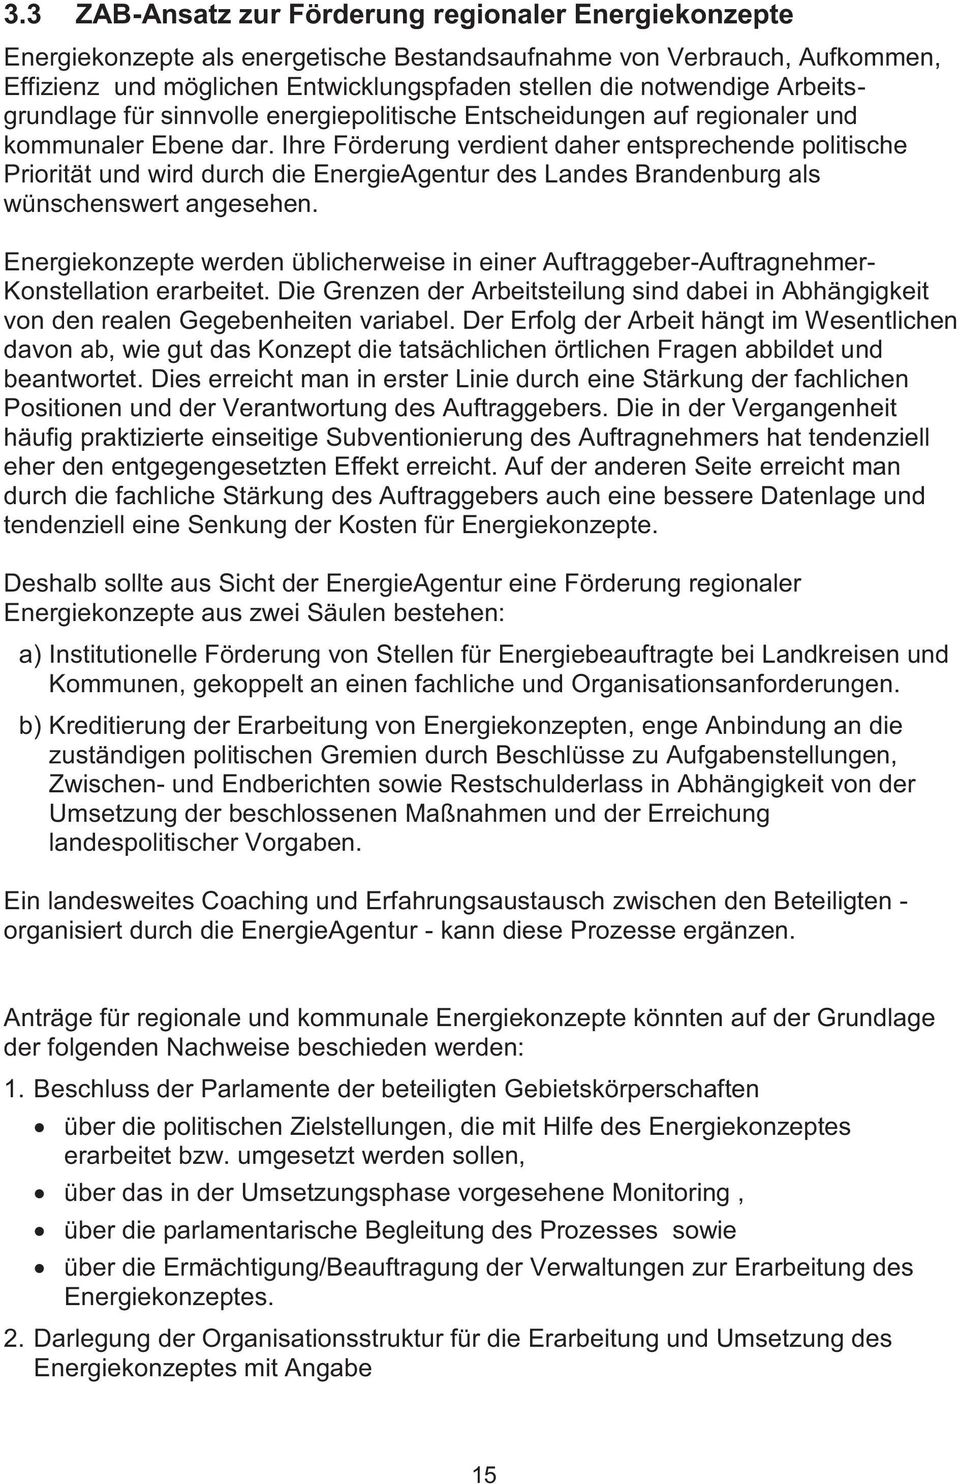 Ire Förderung verdient daer entsprecende politisce Priorität und wird durc die EnergieAgentur des Landes Brandenburg als wünscenswert angeseen.